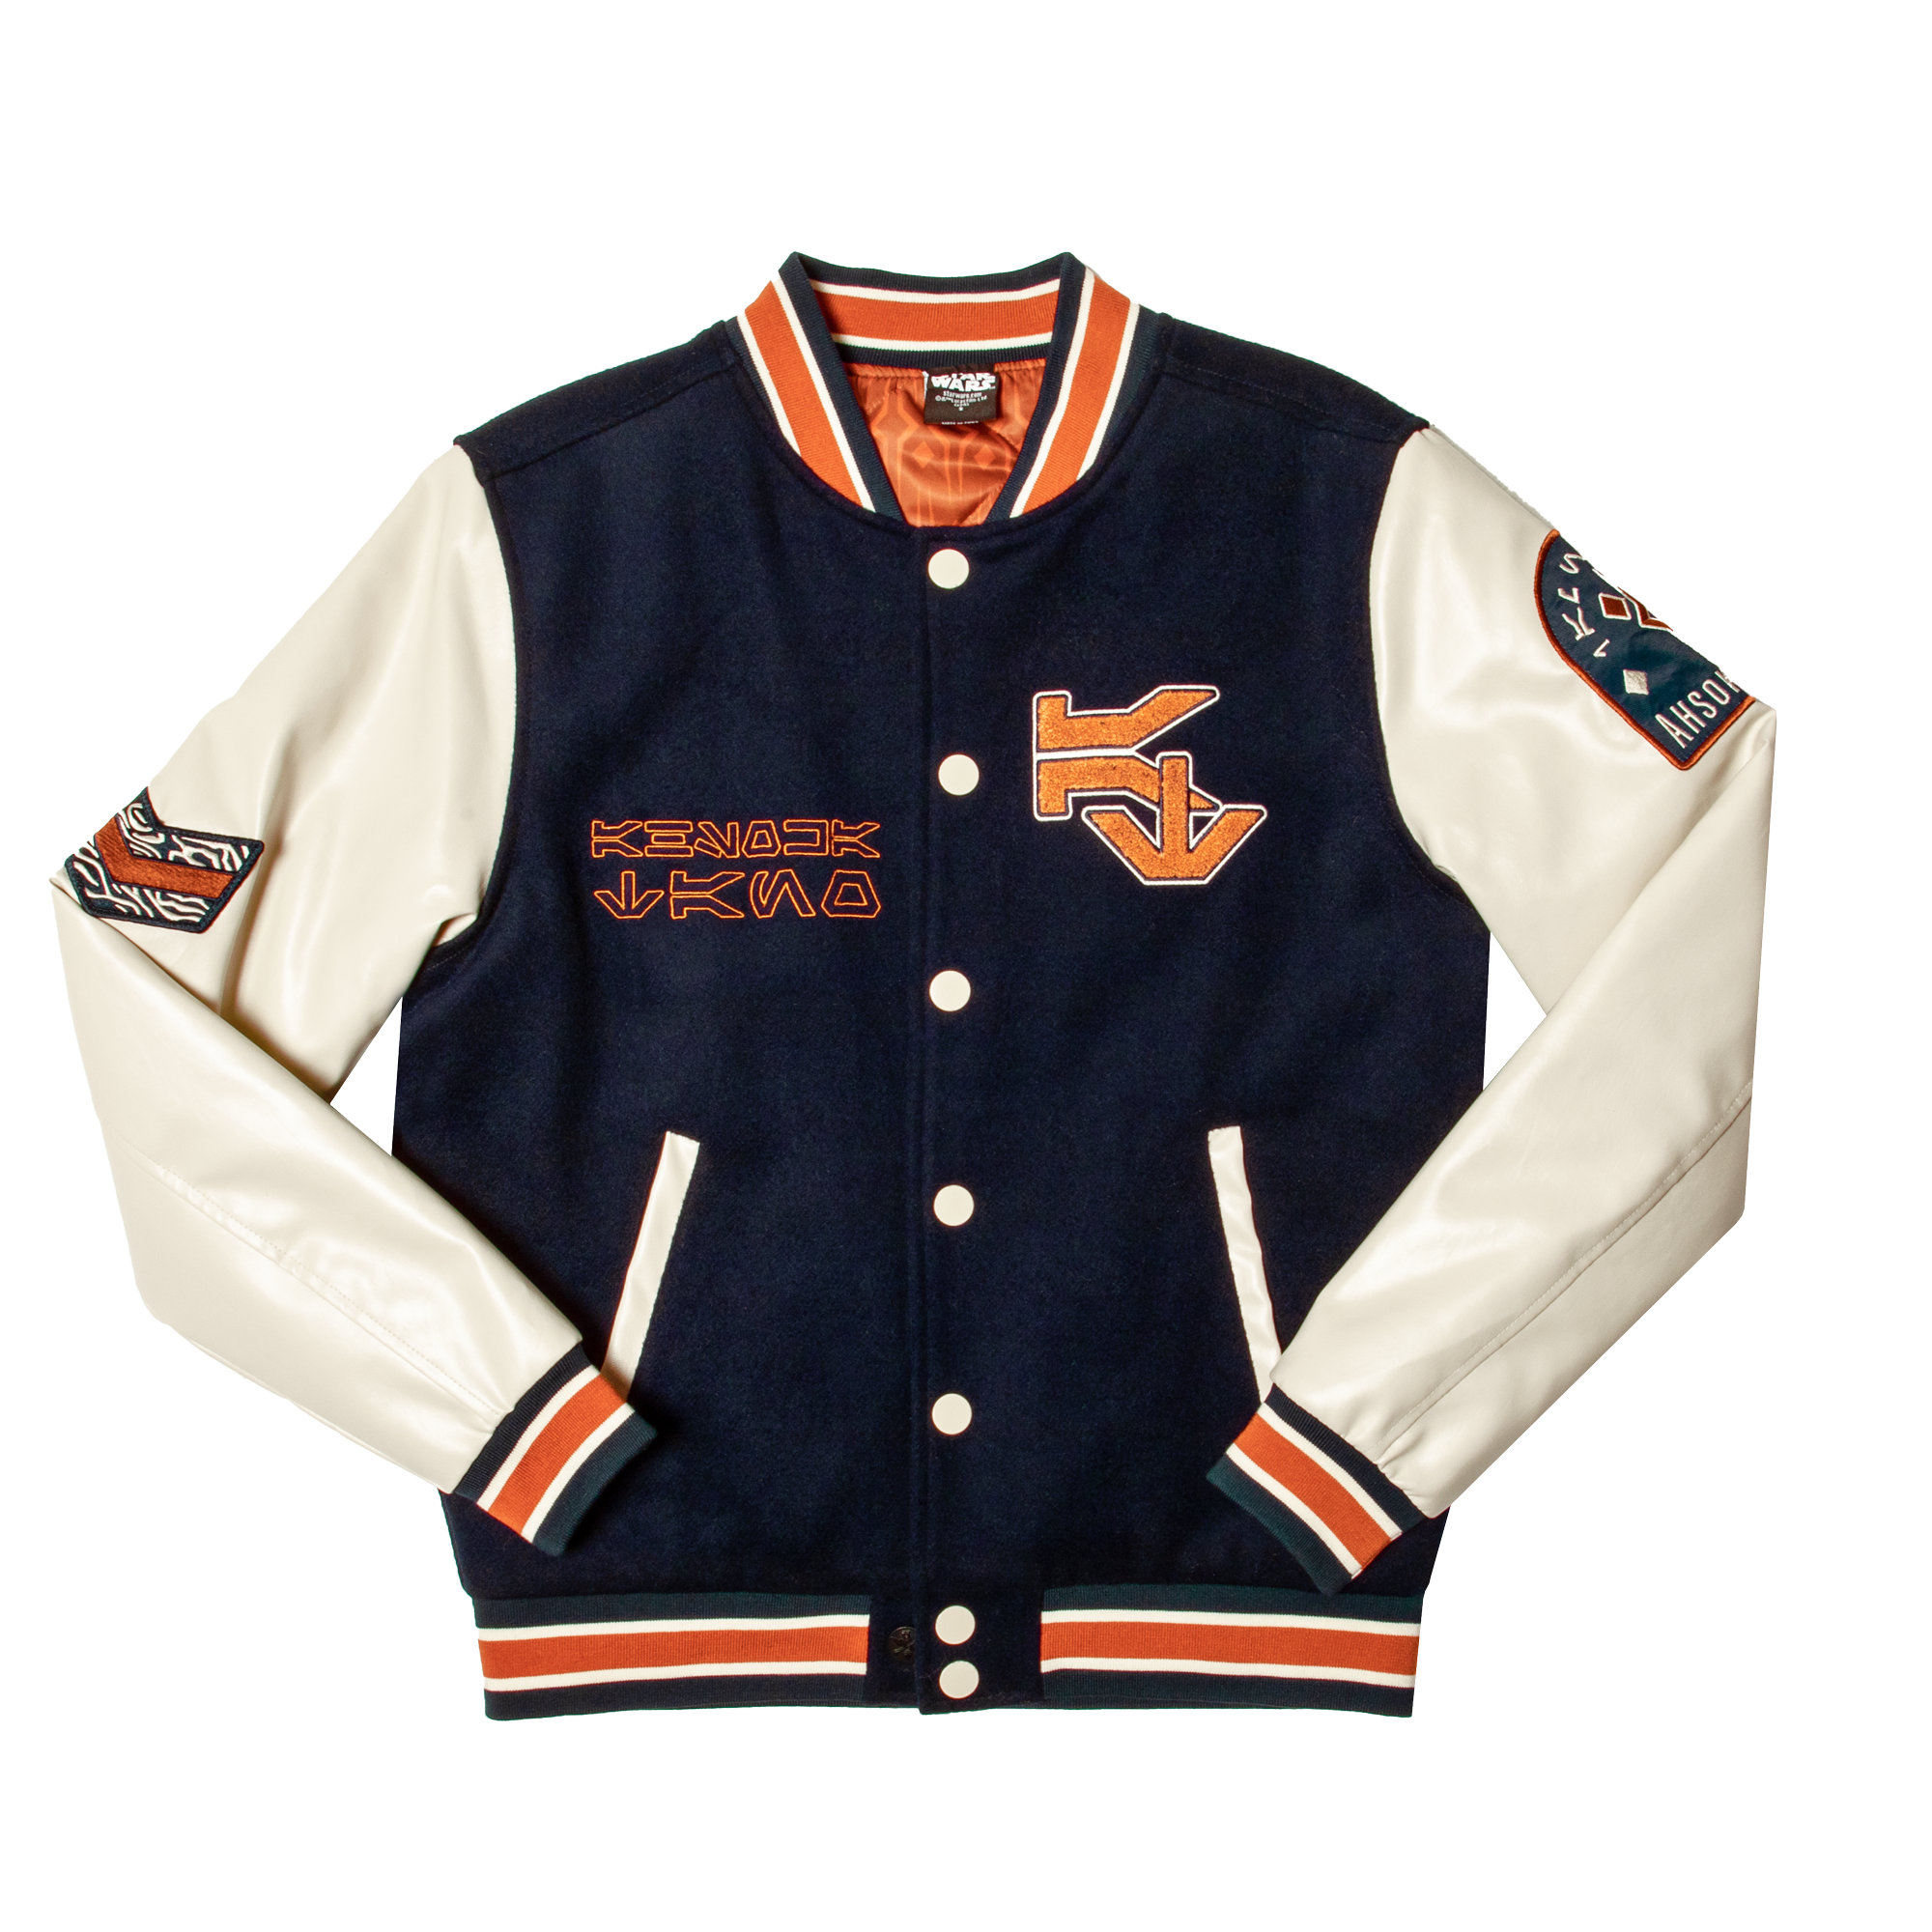 Ahsoka Tano Varsity Jacket